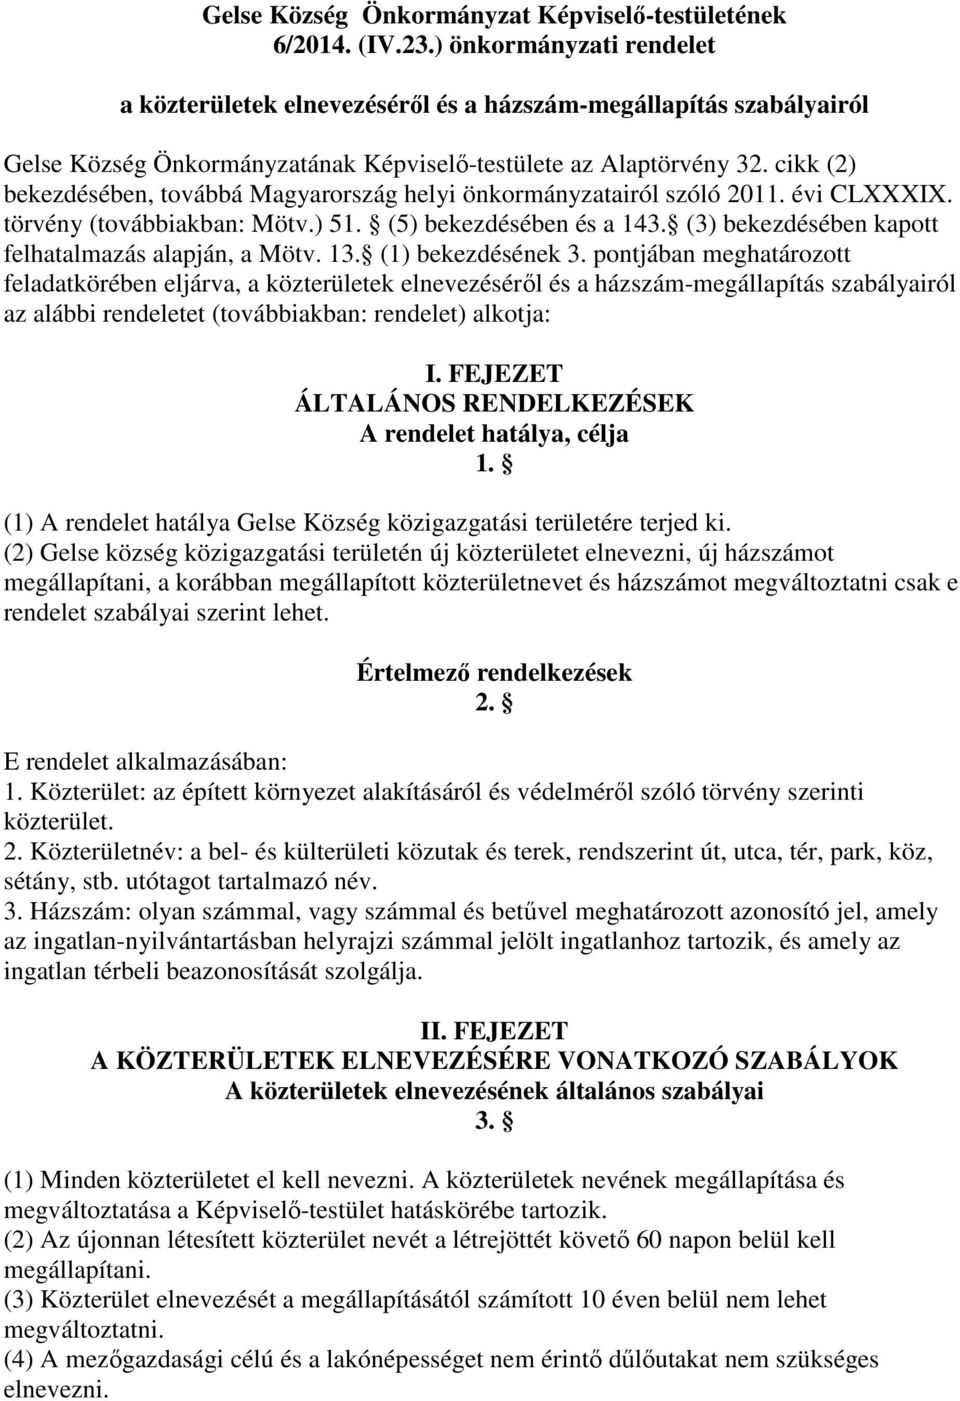 cikk (2) bekezdésében, továbbá Magyarország helyi önkormányzatairól szóló 2011. évi CLXXXIX. törvény (továbbiakban: Mötv.) 51. (5) bekezdésében és a 143.